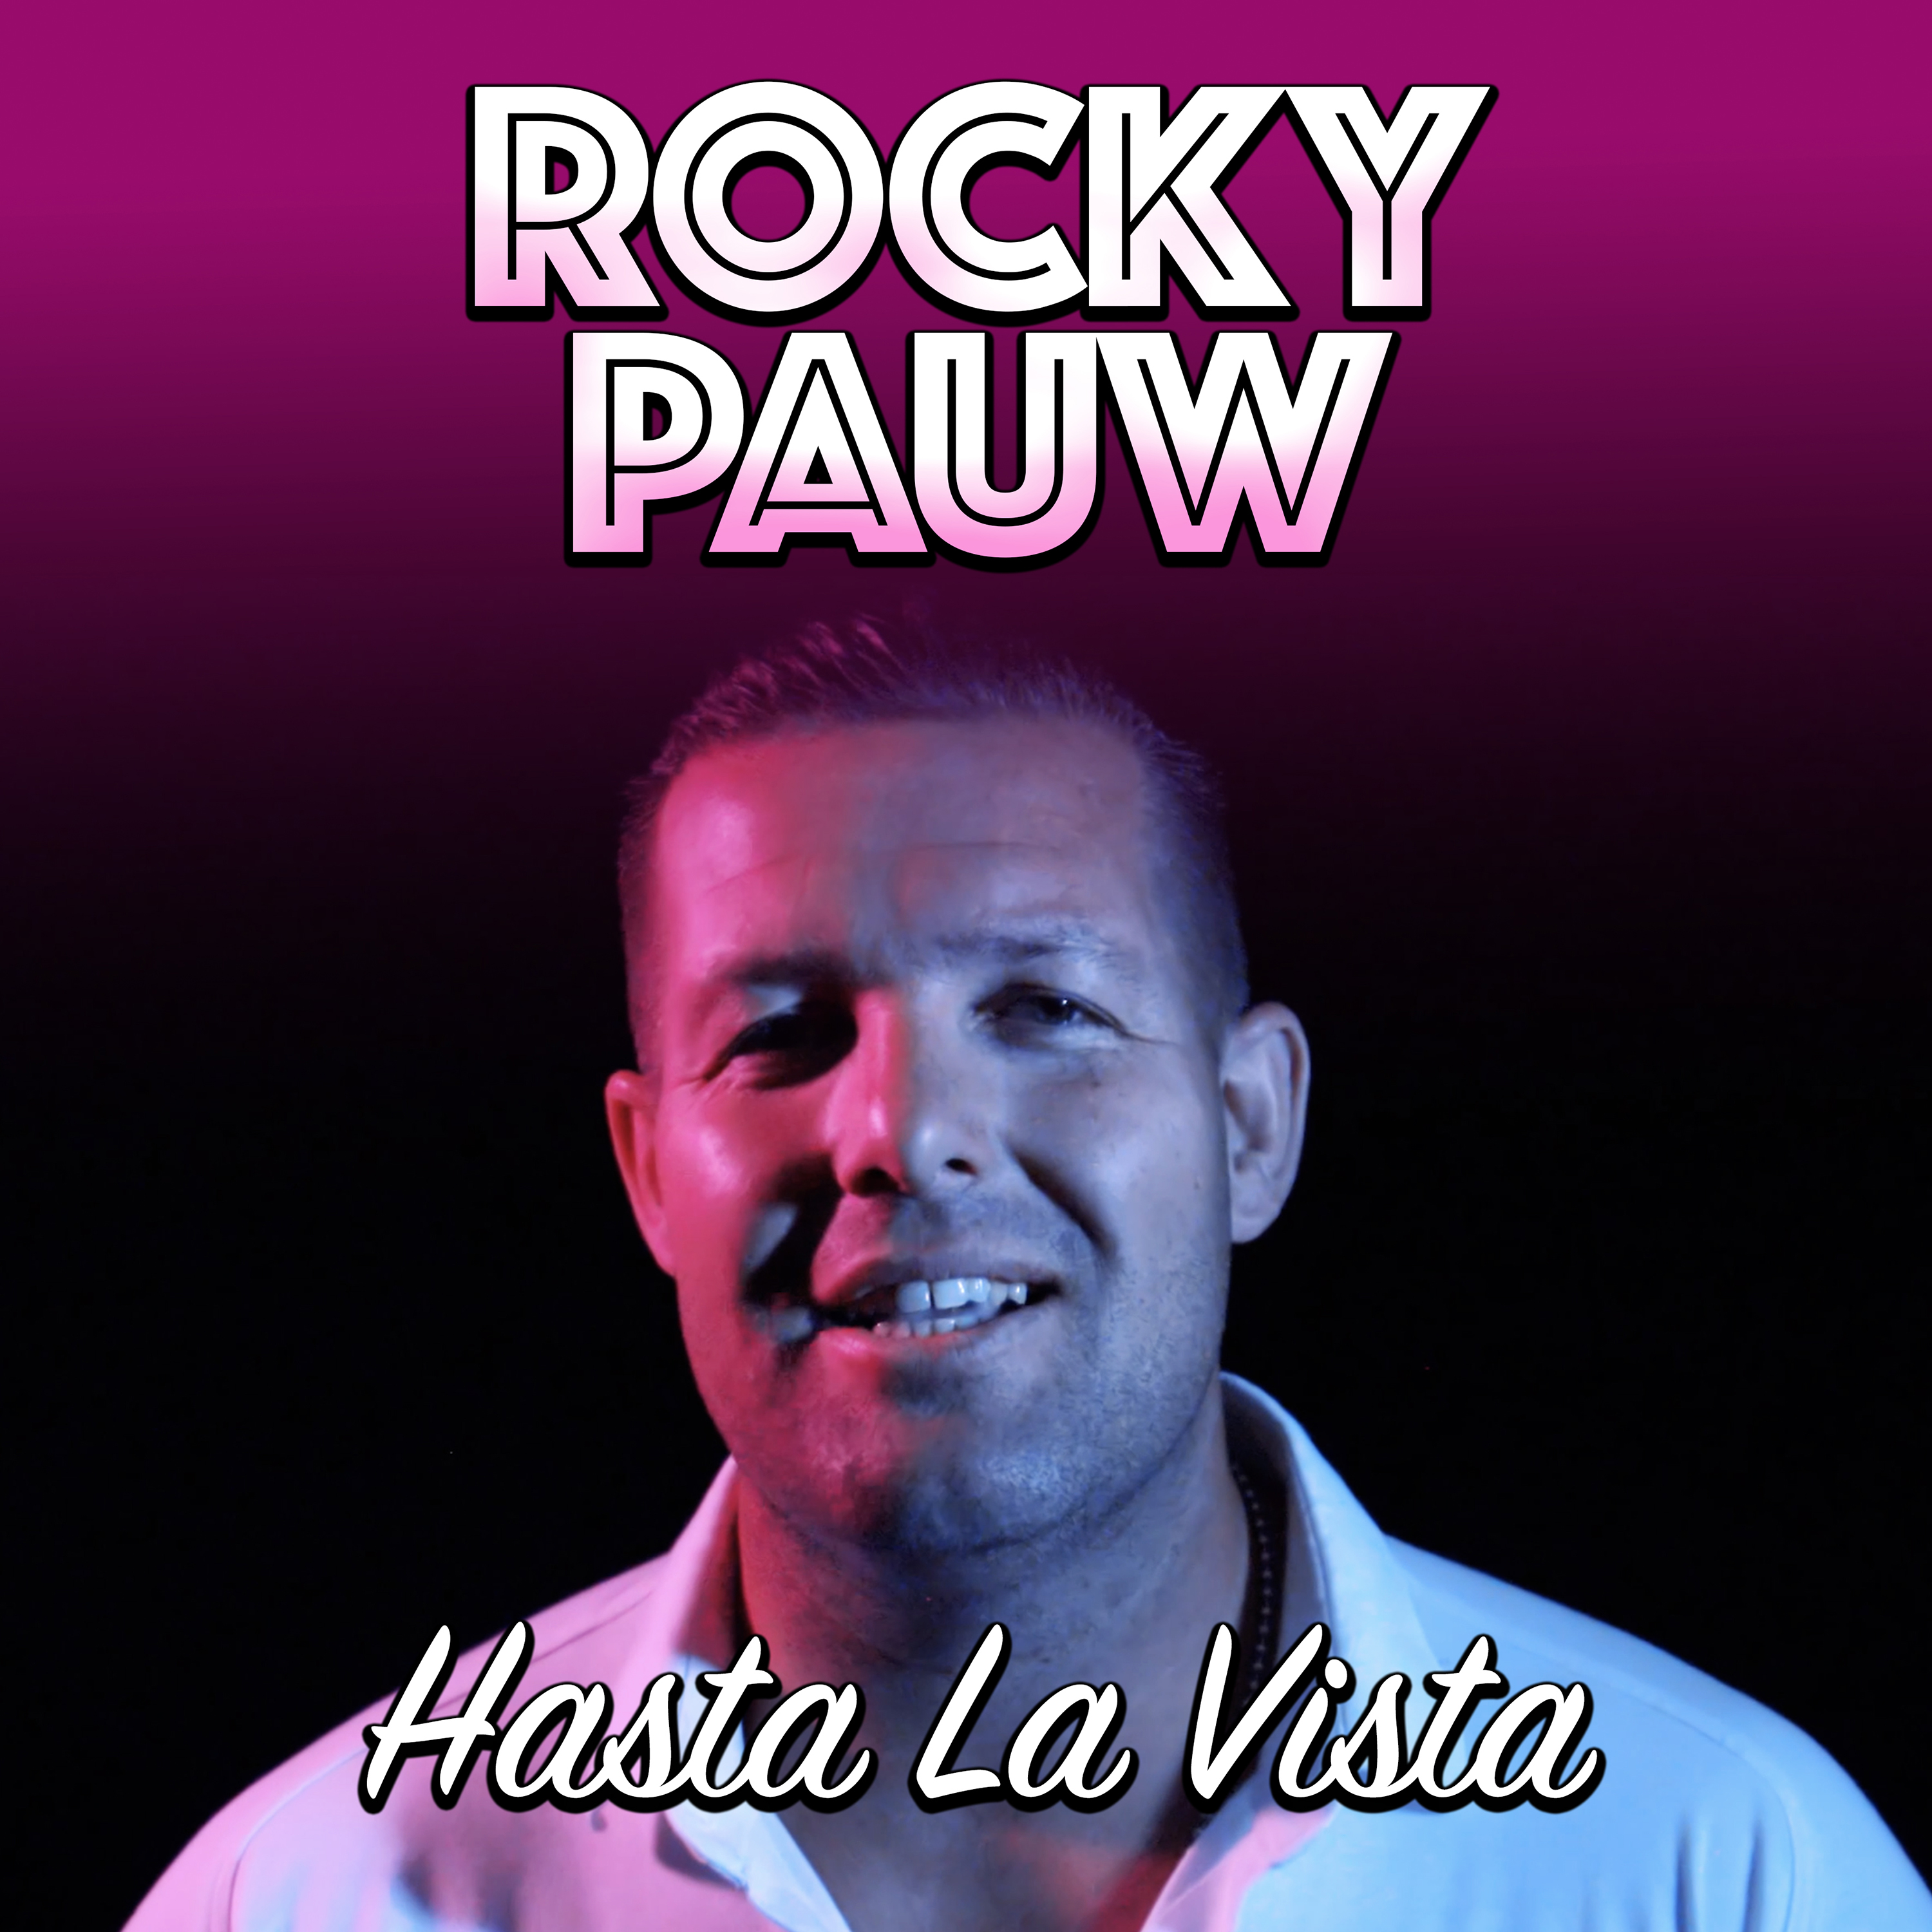 Rocky Pauw